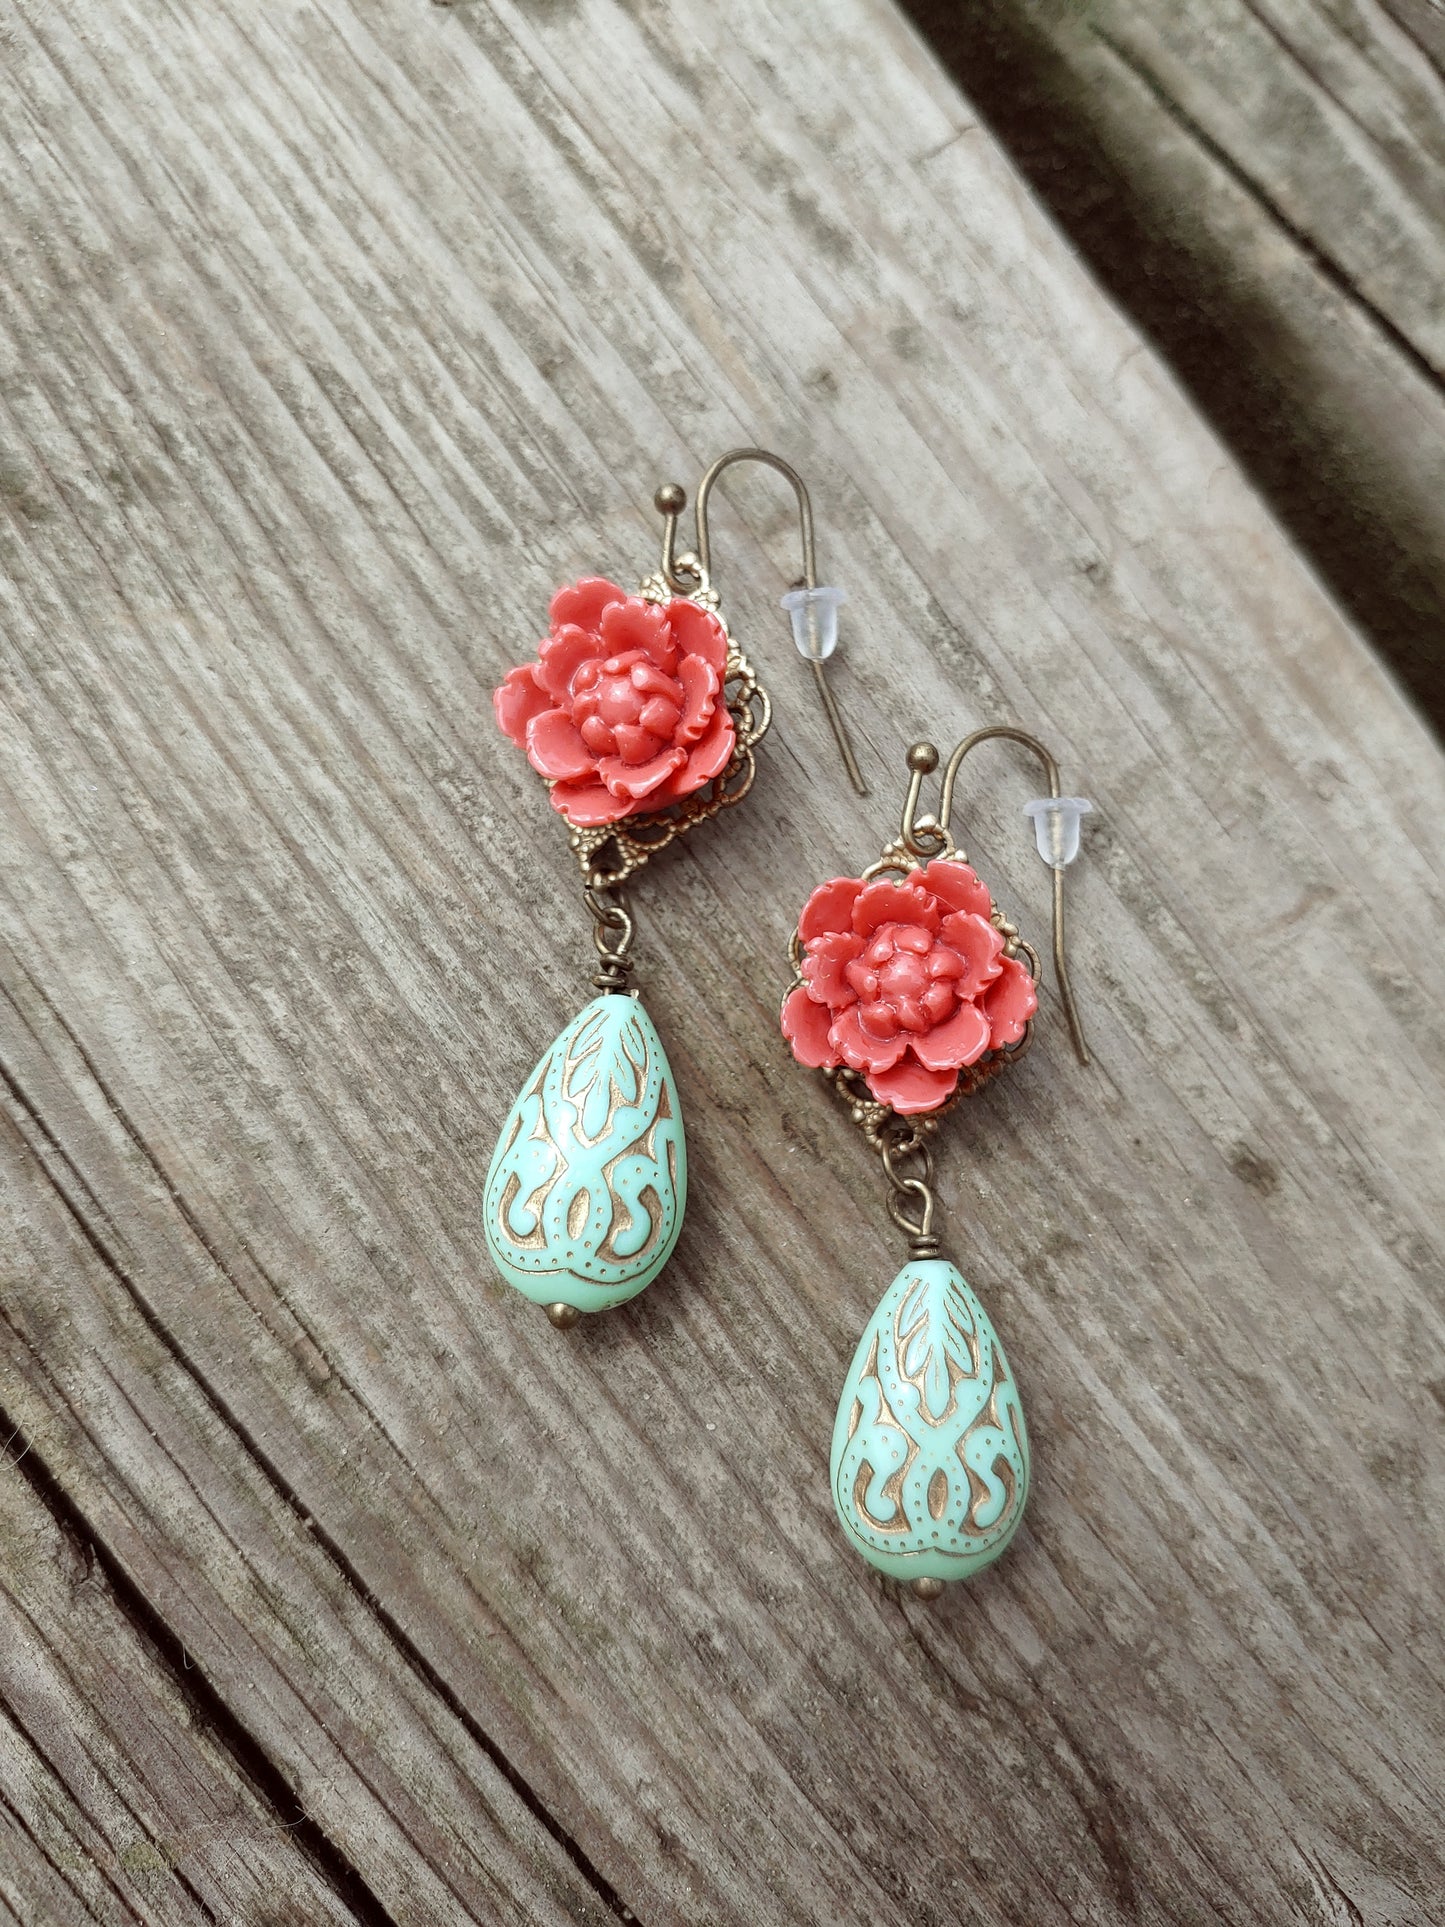 Vintage style rose earrings (2)